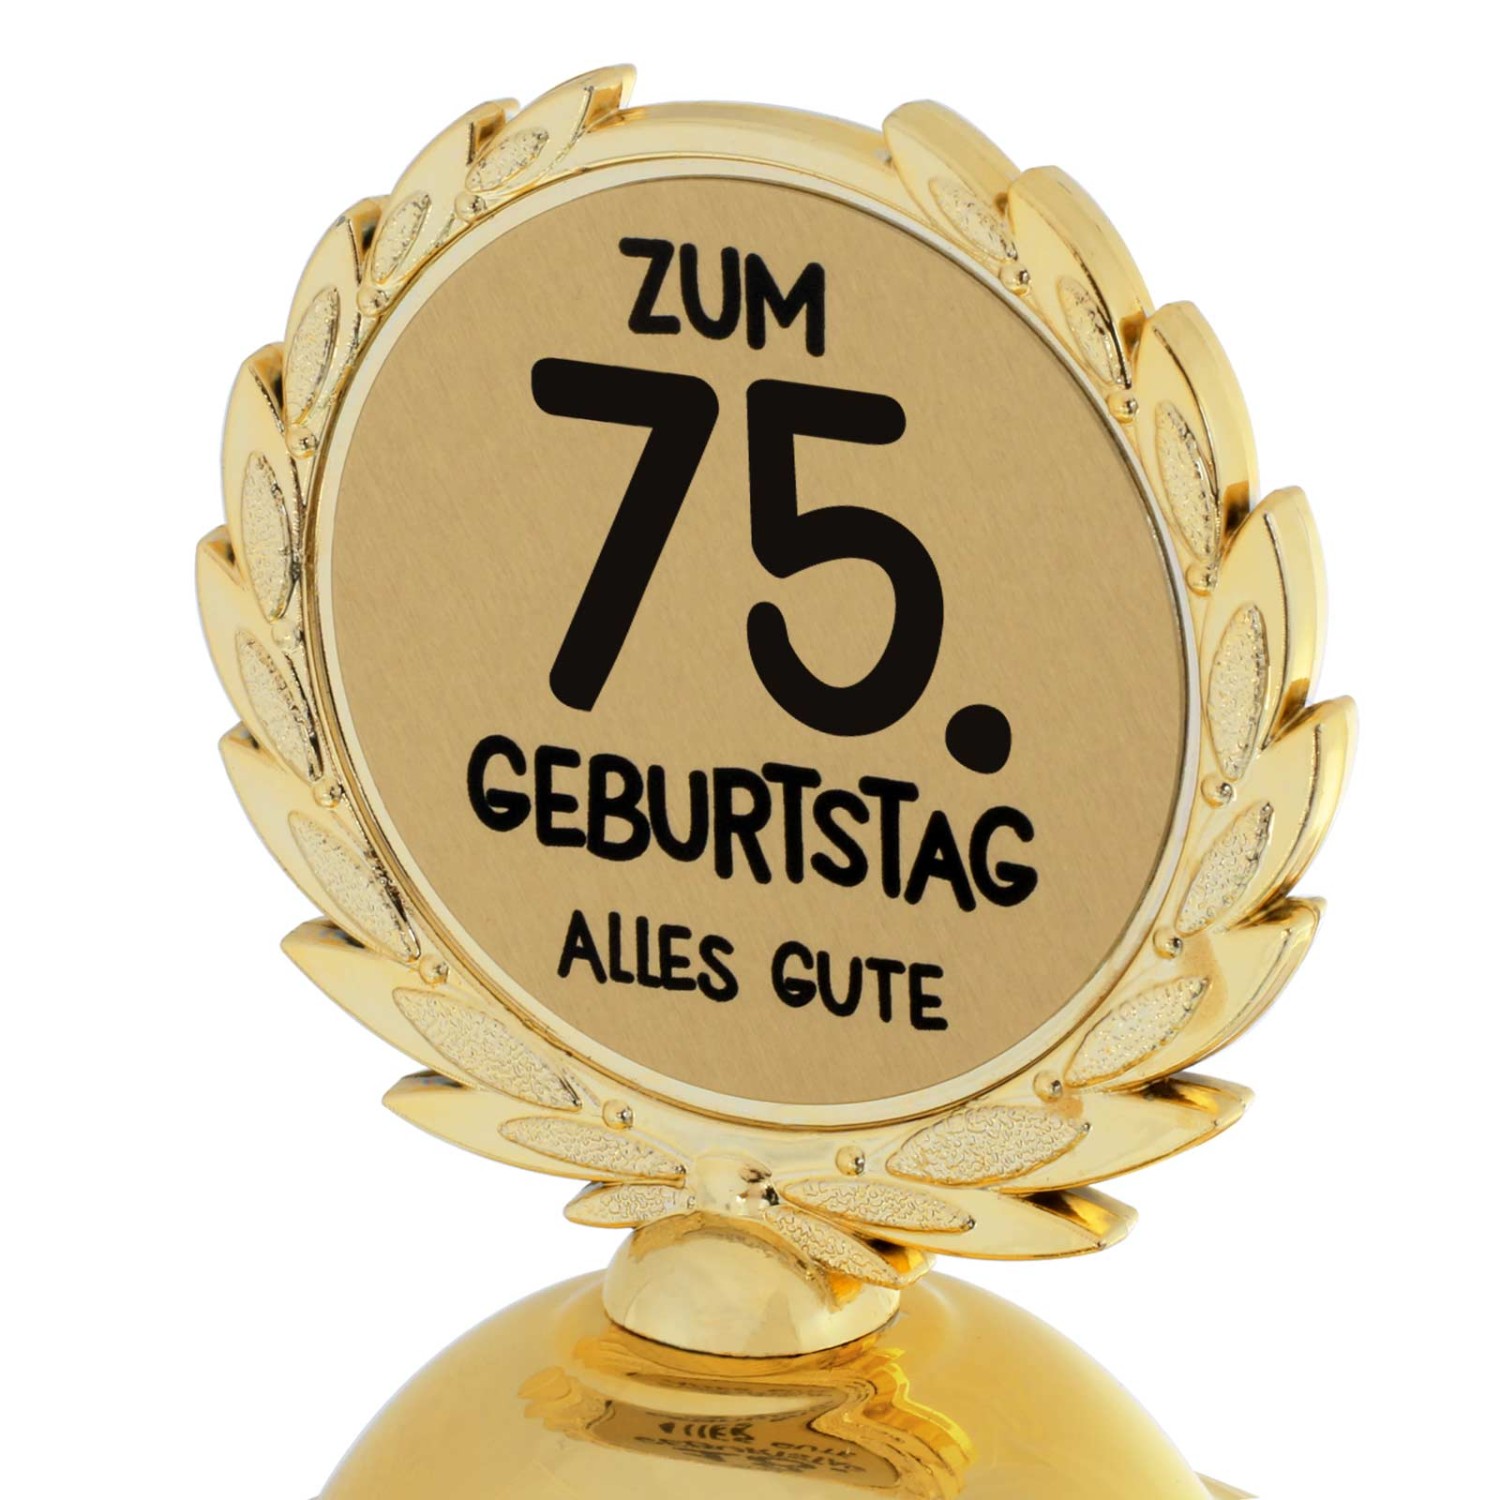 1. Foto Pokal 75. Geburtstag Geschenk 31cm groß (Jahreszahl Geburtstag: 75)